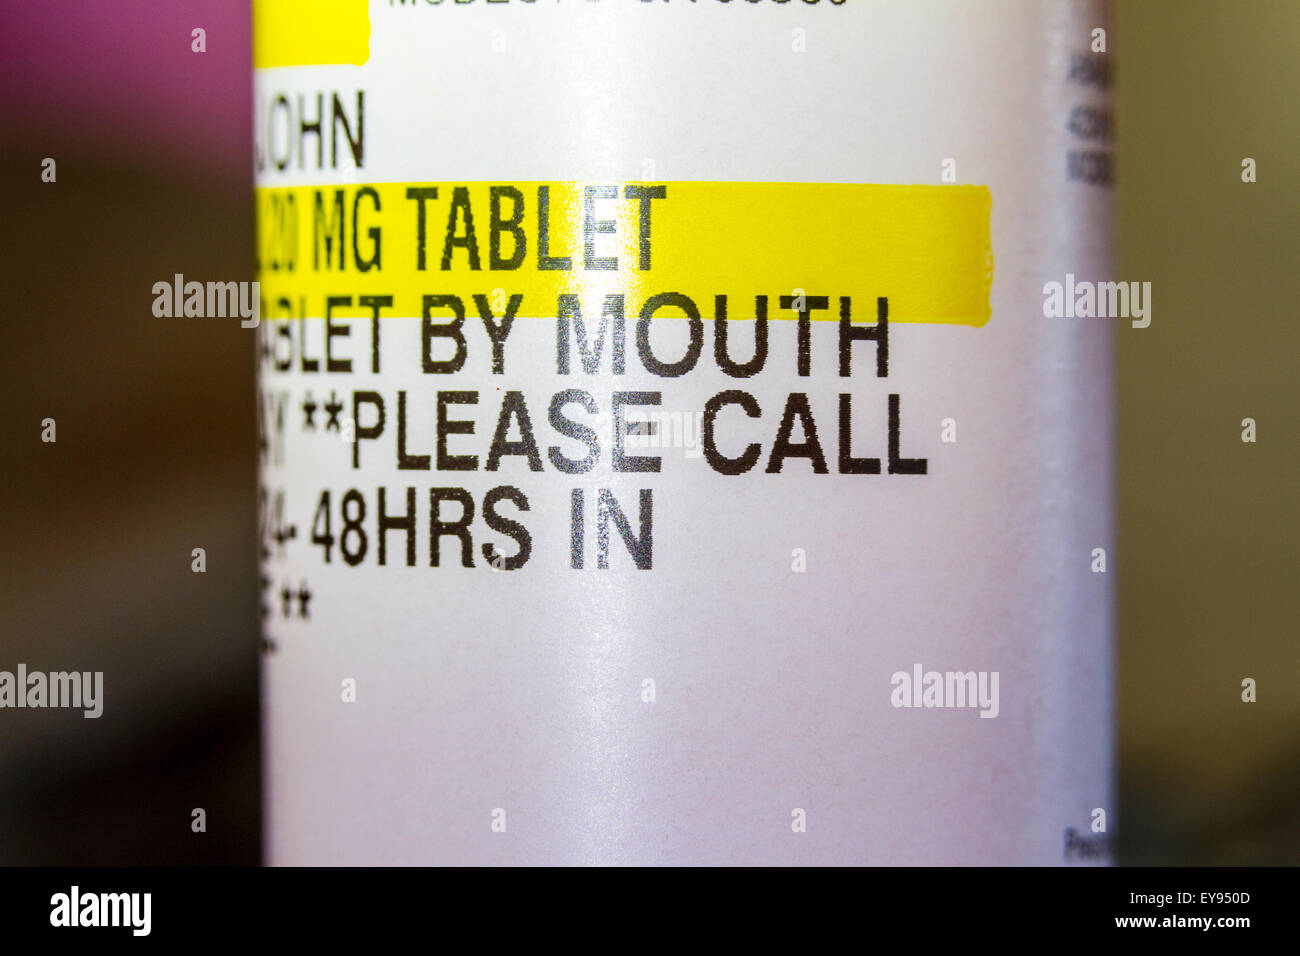 A Costco Pharmacy Prescription Label Stock Photo